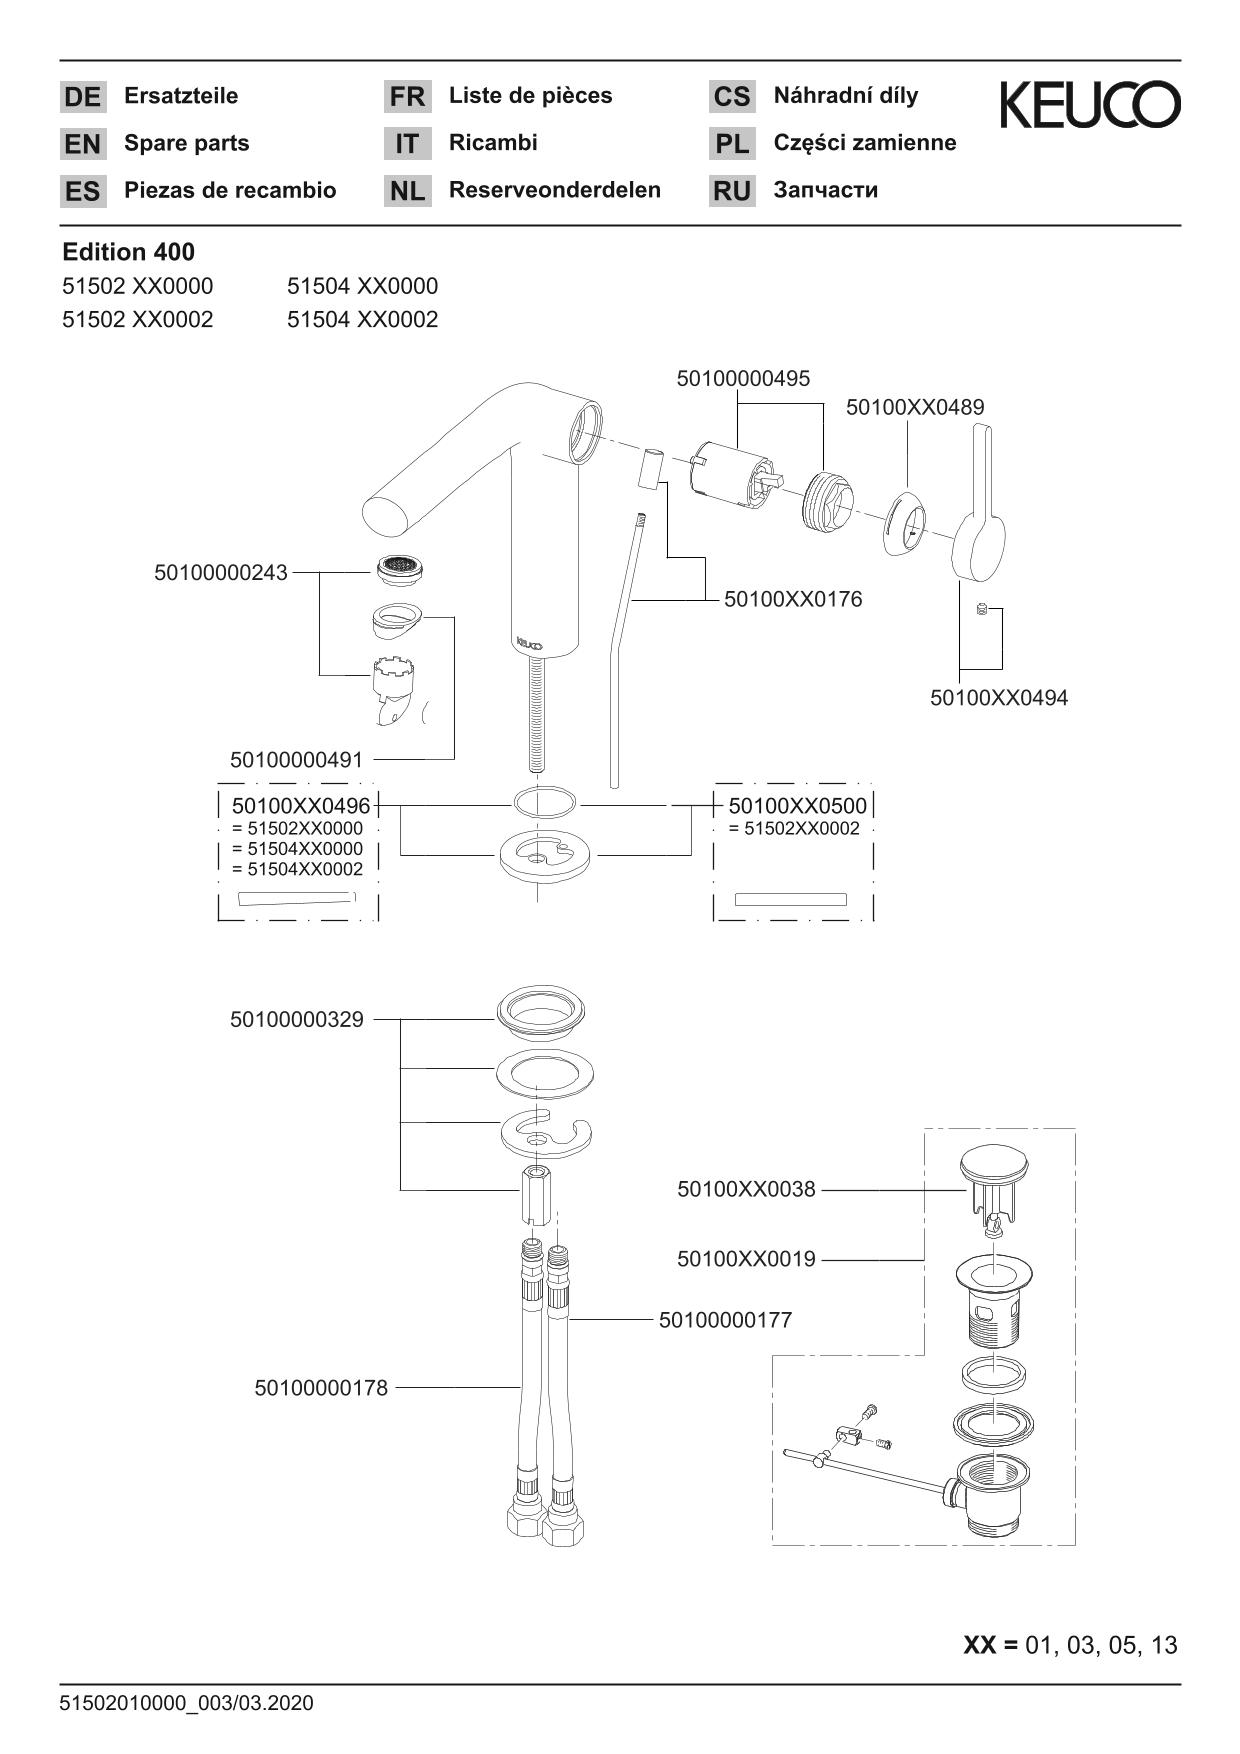 Edition 400 51504130002 Einhebel-Waschtischmischer 120 mit Zugstangen-Ablaufgarnitur Schwarzchrom gebürstet